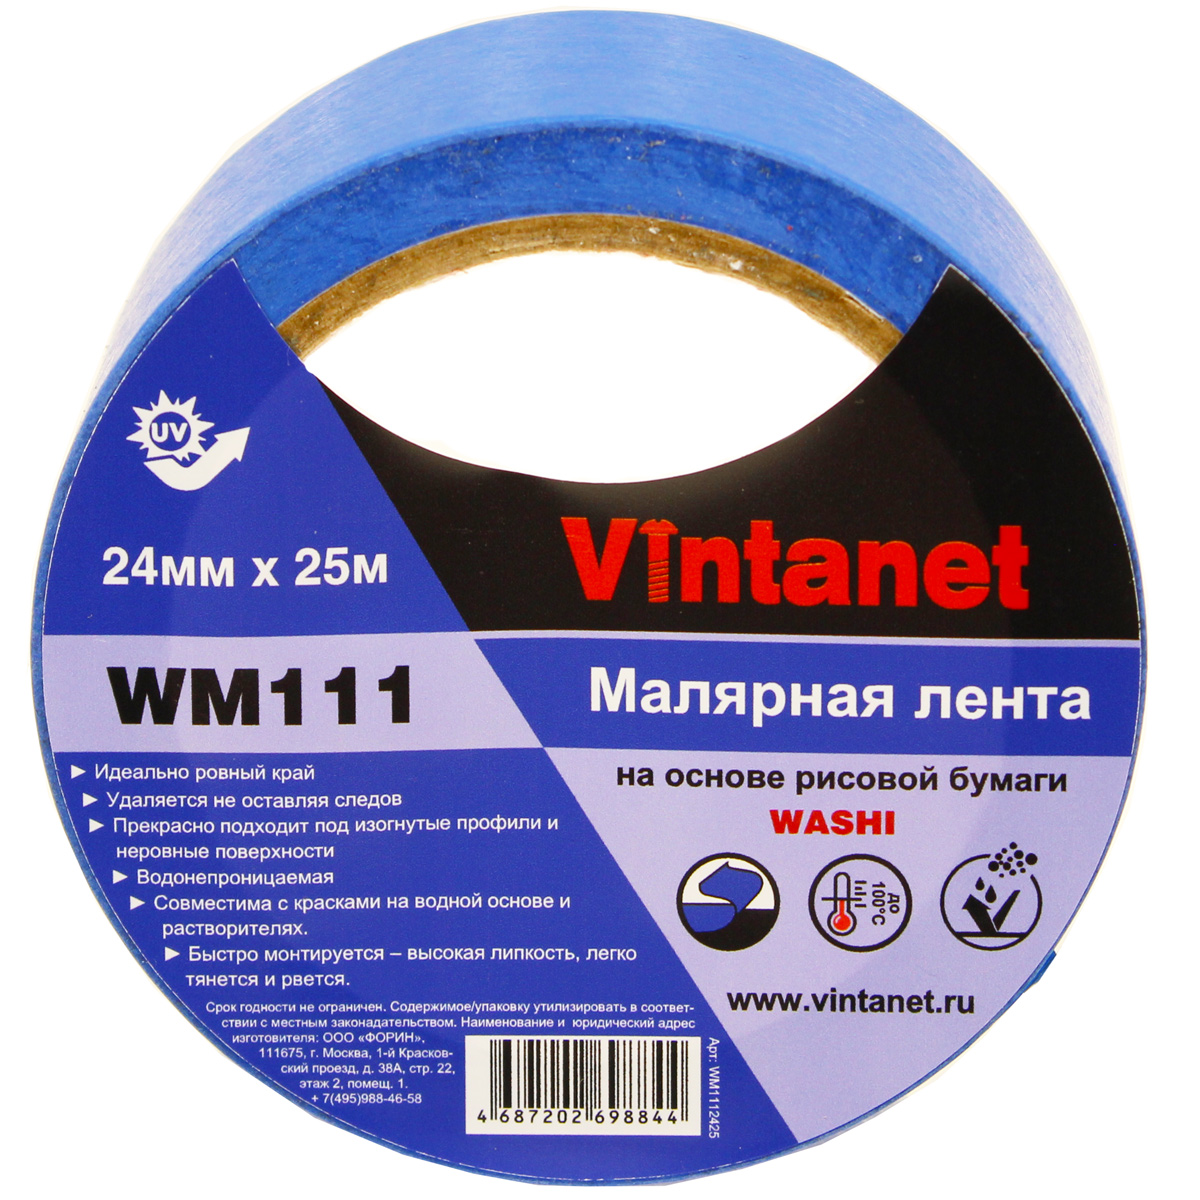 Лента малярная на основе рисовой бумаги Washi, Vintanet WM111, 24мм х 25м, WM1112425 бумага ная односторонняя